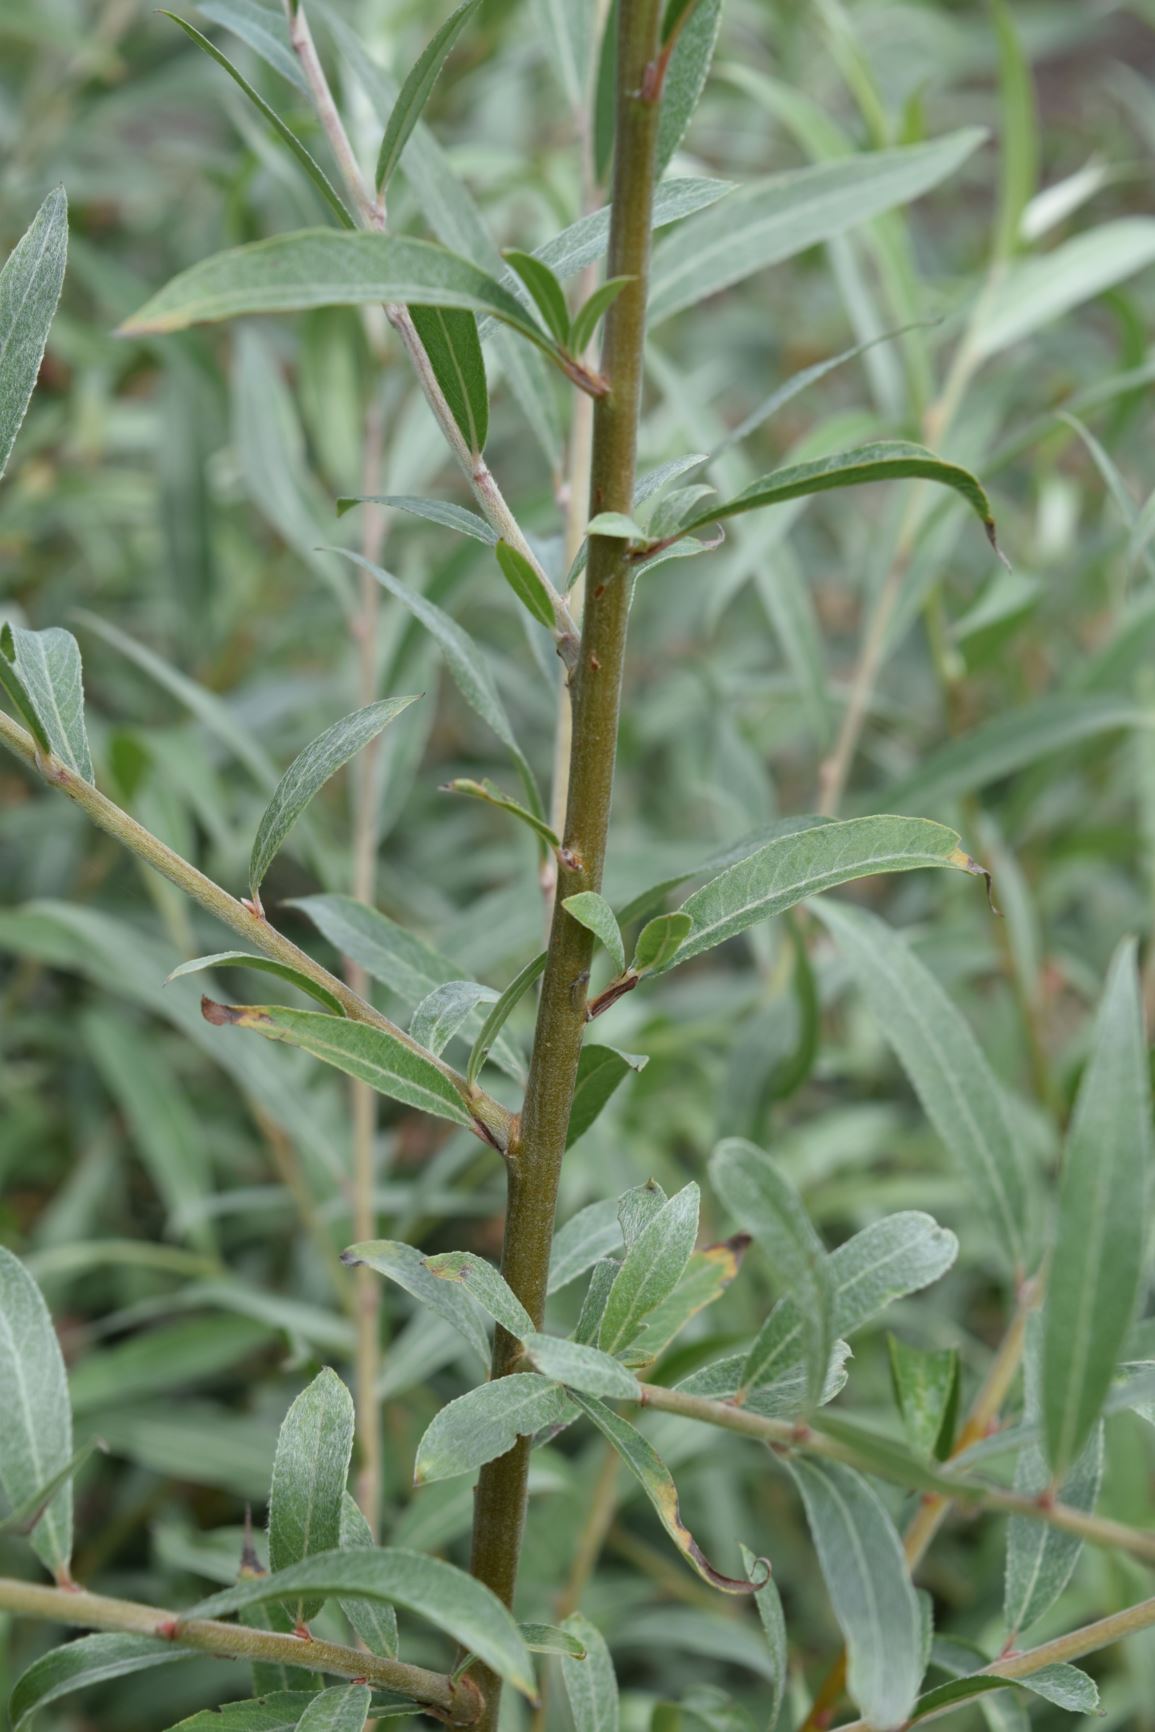 Salix alba var. sericea - silver willow, white willow